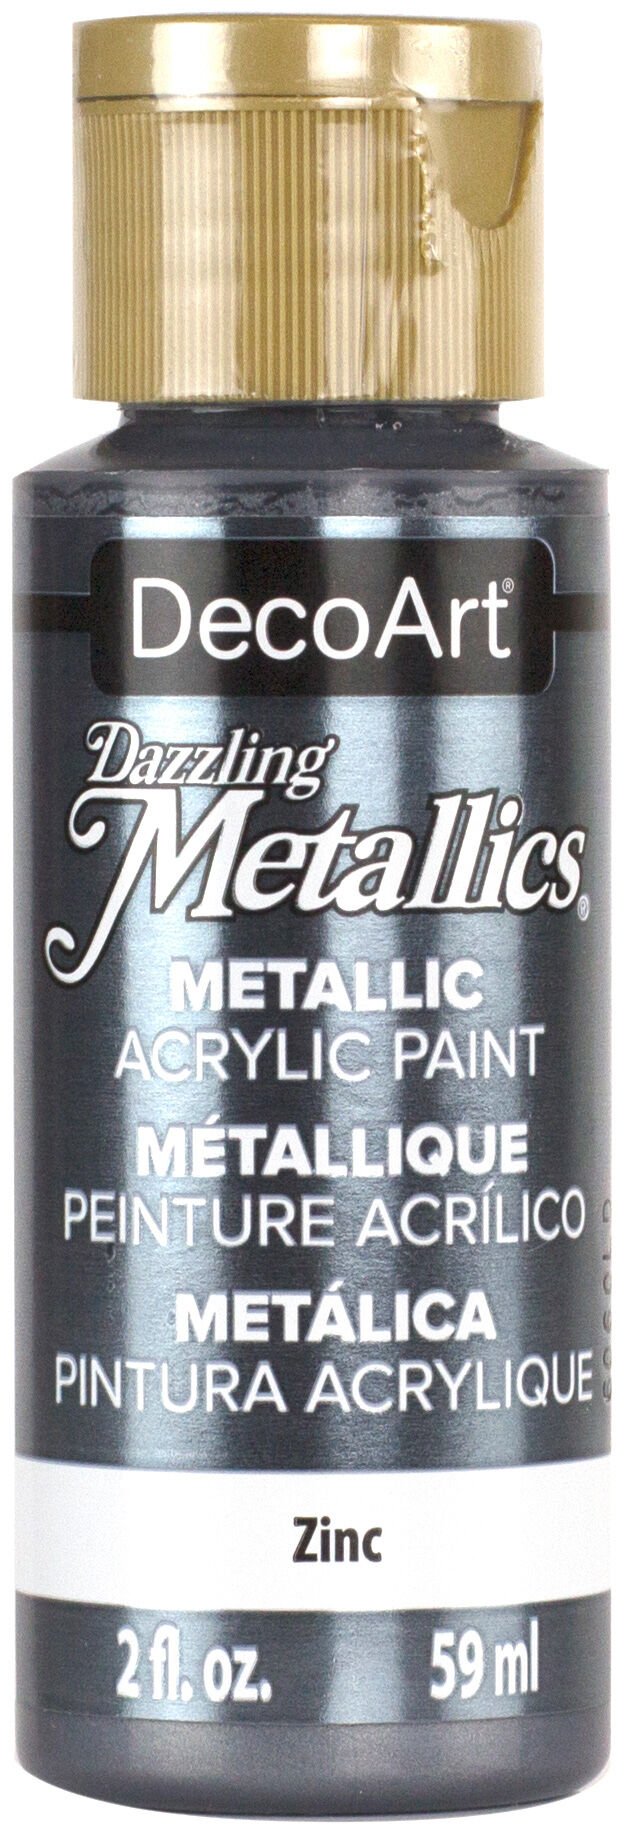 Acrílico metalizado Decoart 59ml